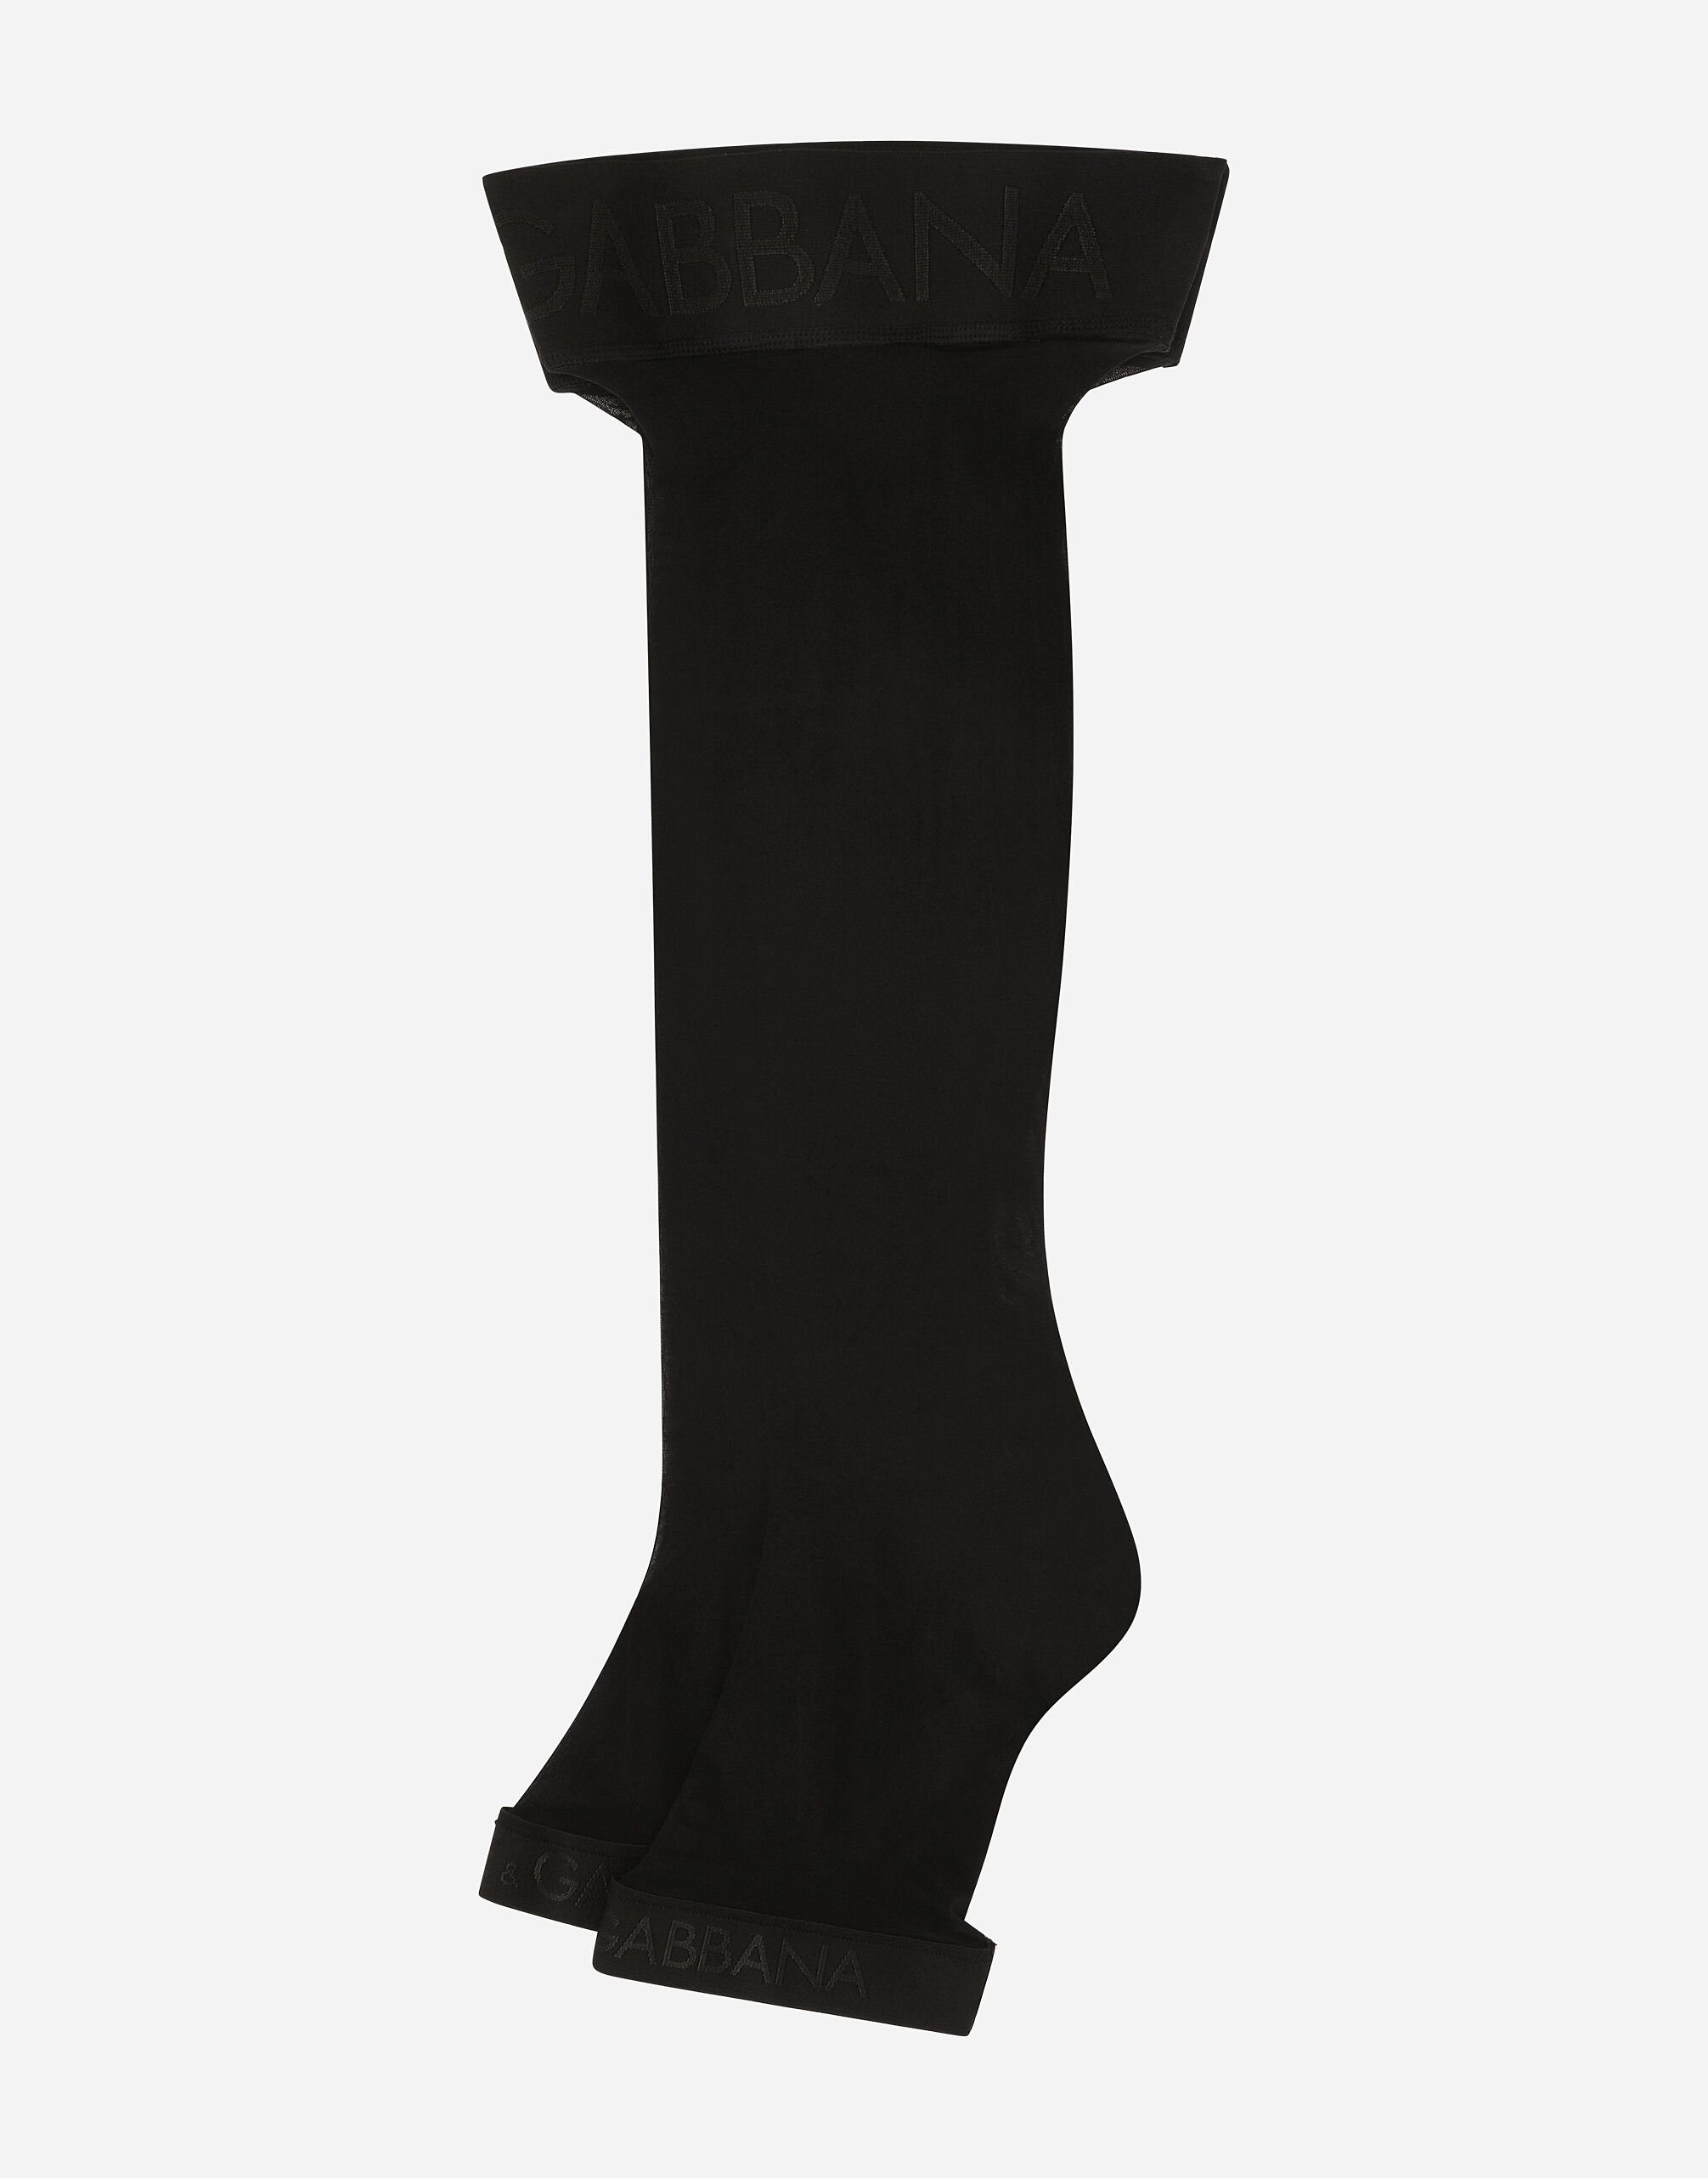 Dolce & Gabbana Calze autoreggenti con elastico logato Stampa O4A75TONP23